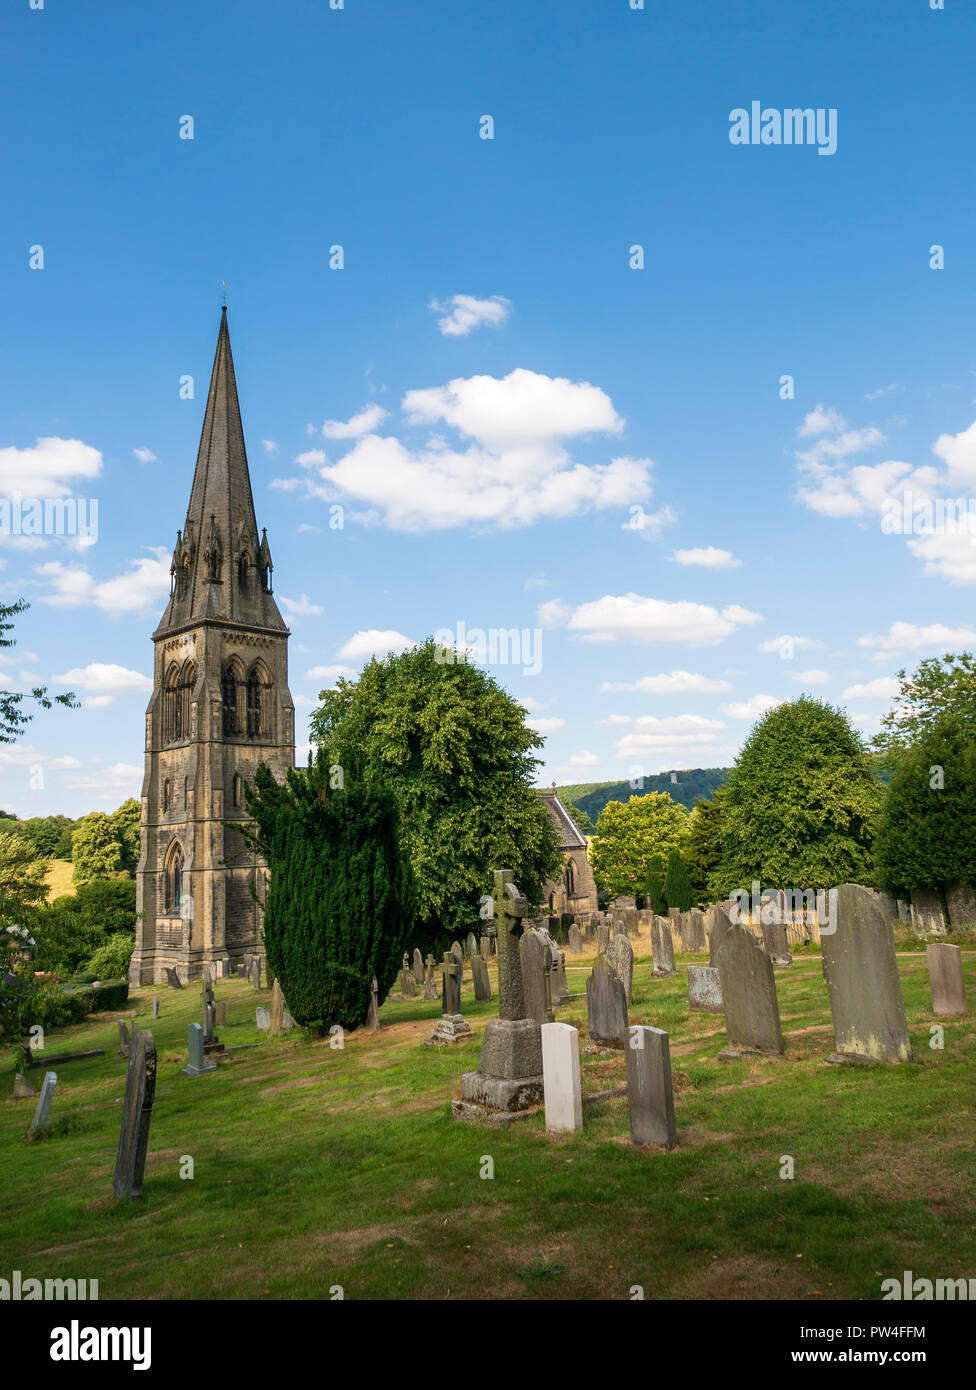 La Chiesa Parrocchiale di San Pietro, Edensor, Chatsworth Estate, il Parco Nazionale di Peak District, Derbyshire, Inghilterra, Regno Unito. Foto Stock